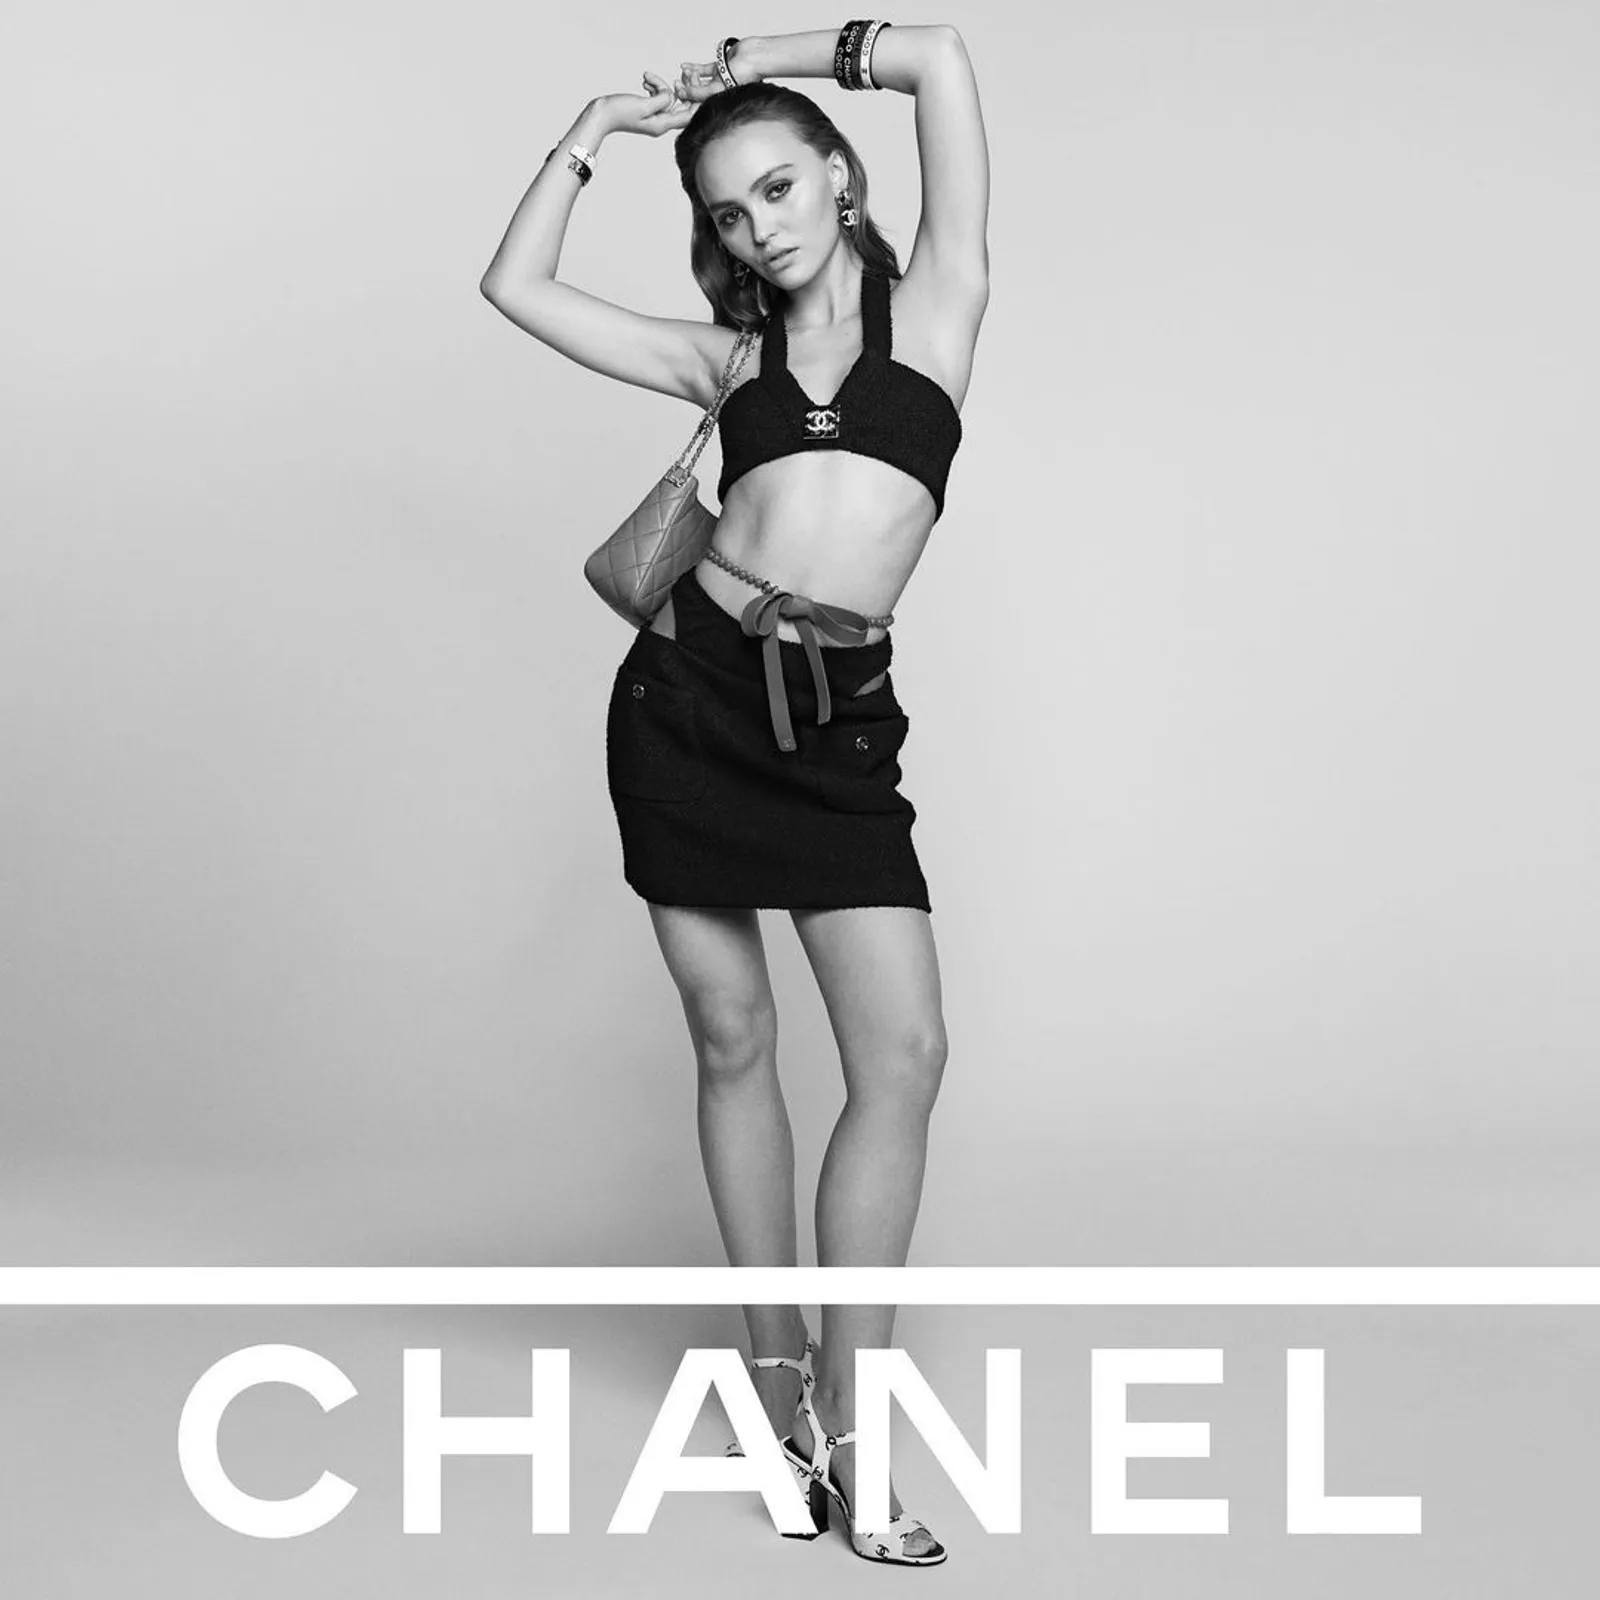 Duta Chanel, Intip Gaya Lily-Rose Depp di Kampanye Fashion Mewah